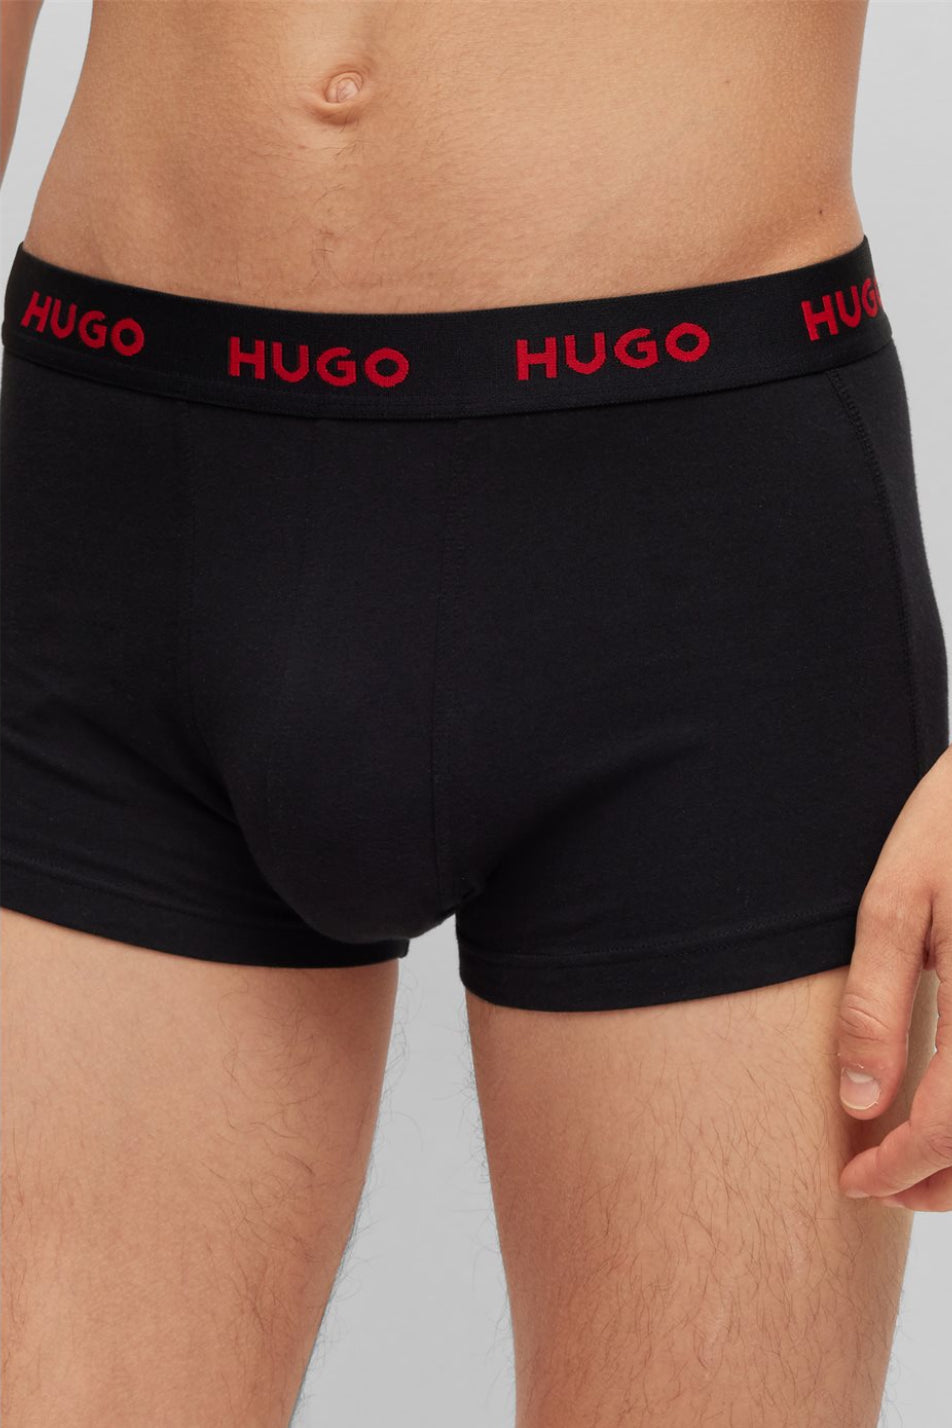 HUGO 3 Pack Men's Design Trunk